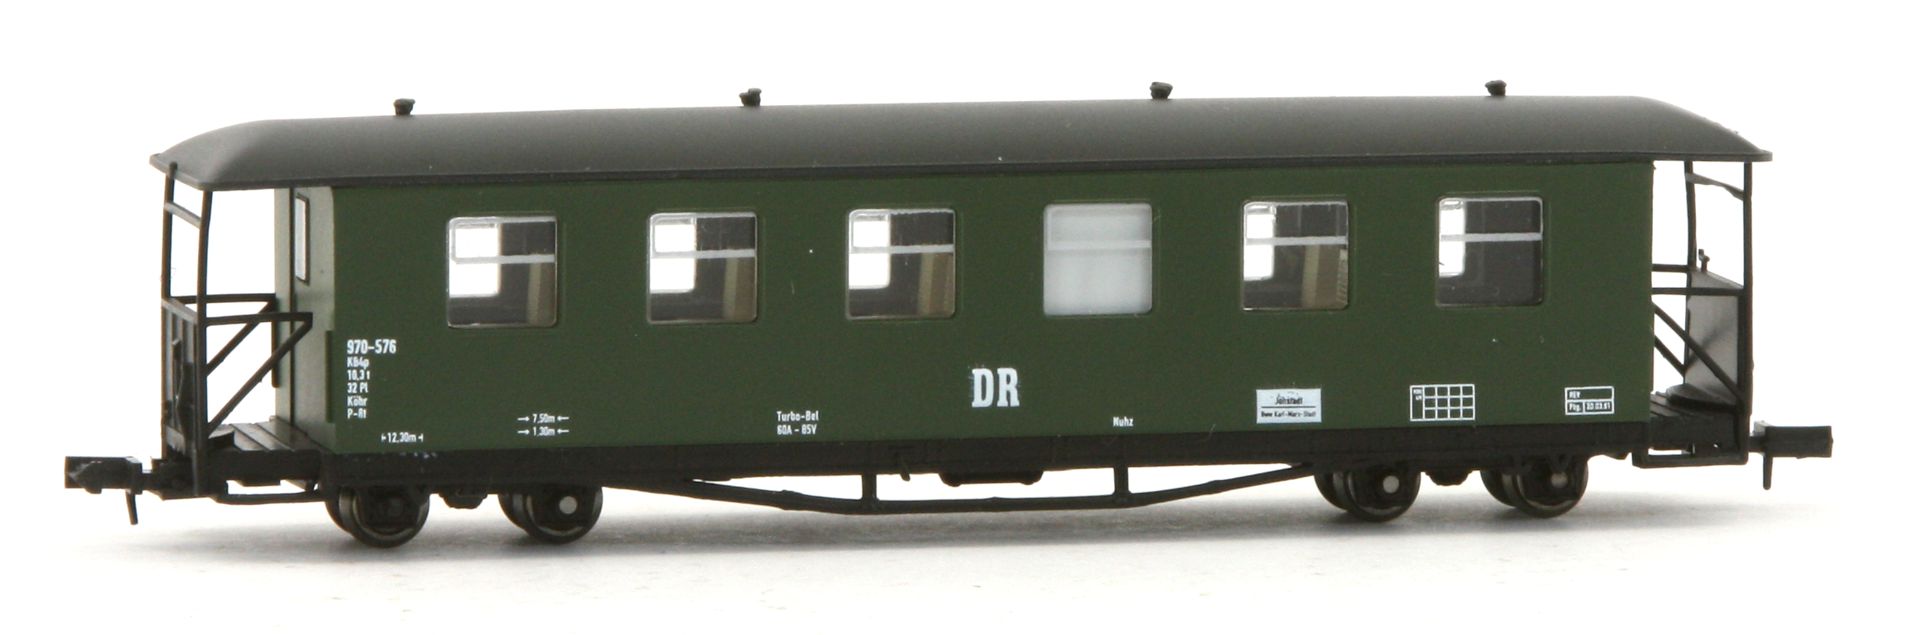 Karsei 29230 - Rekowagen, Basis Traglastenwagen, DR, Ep.III-IV, 1 .BN